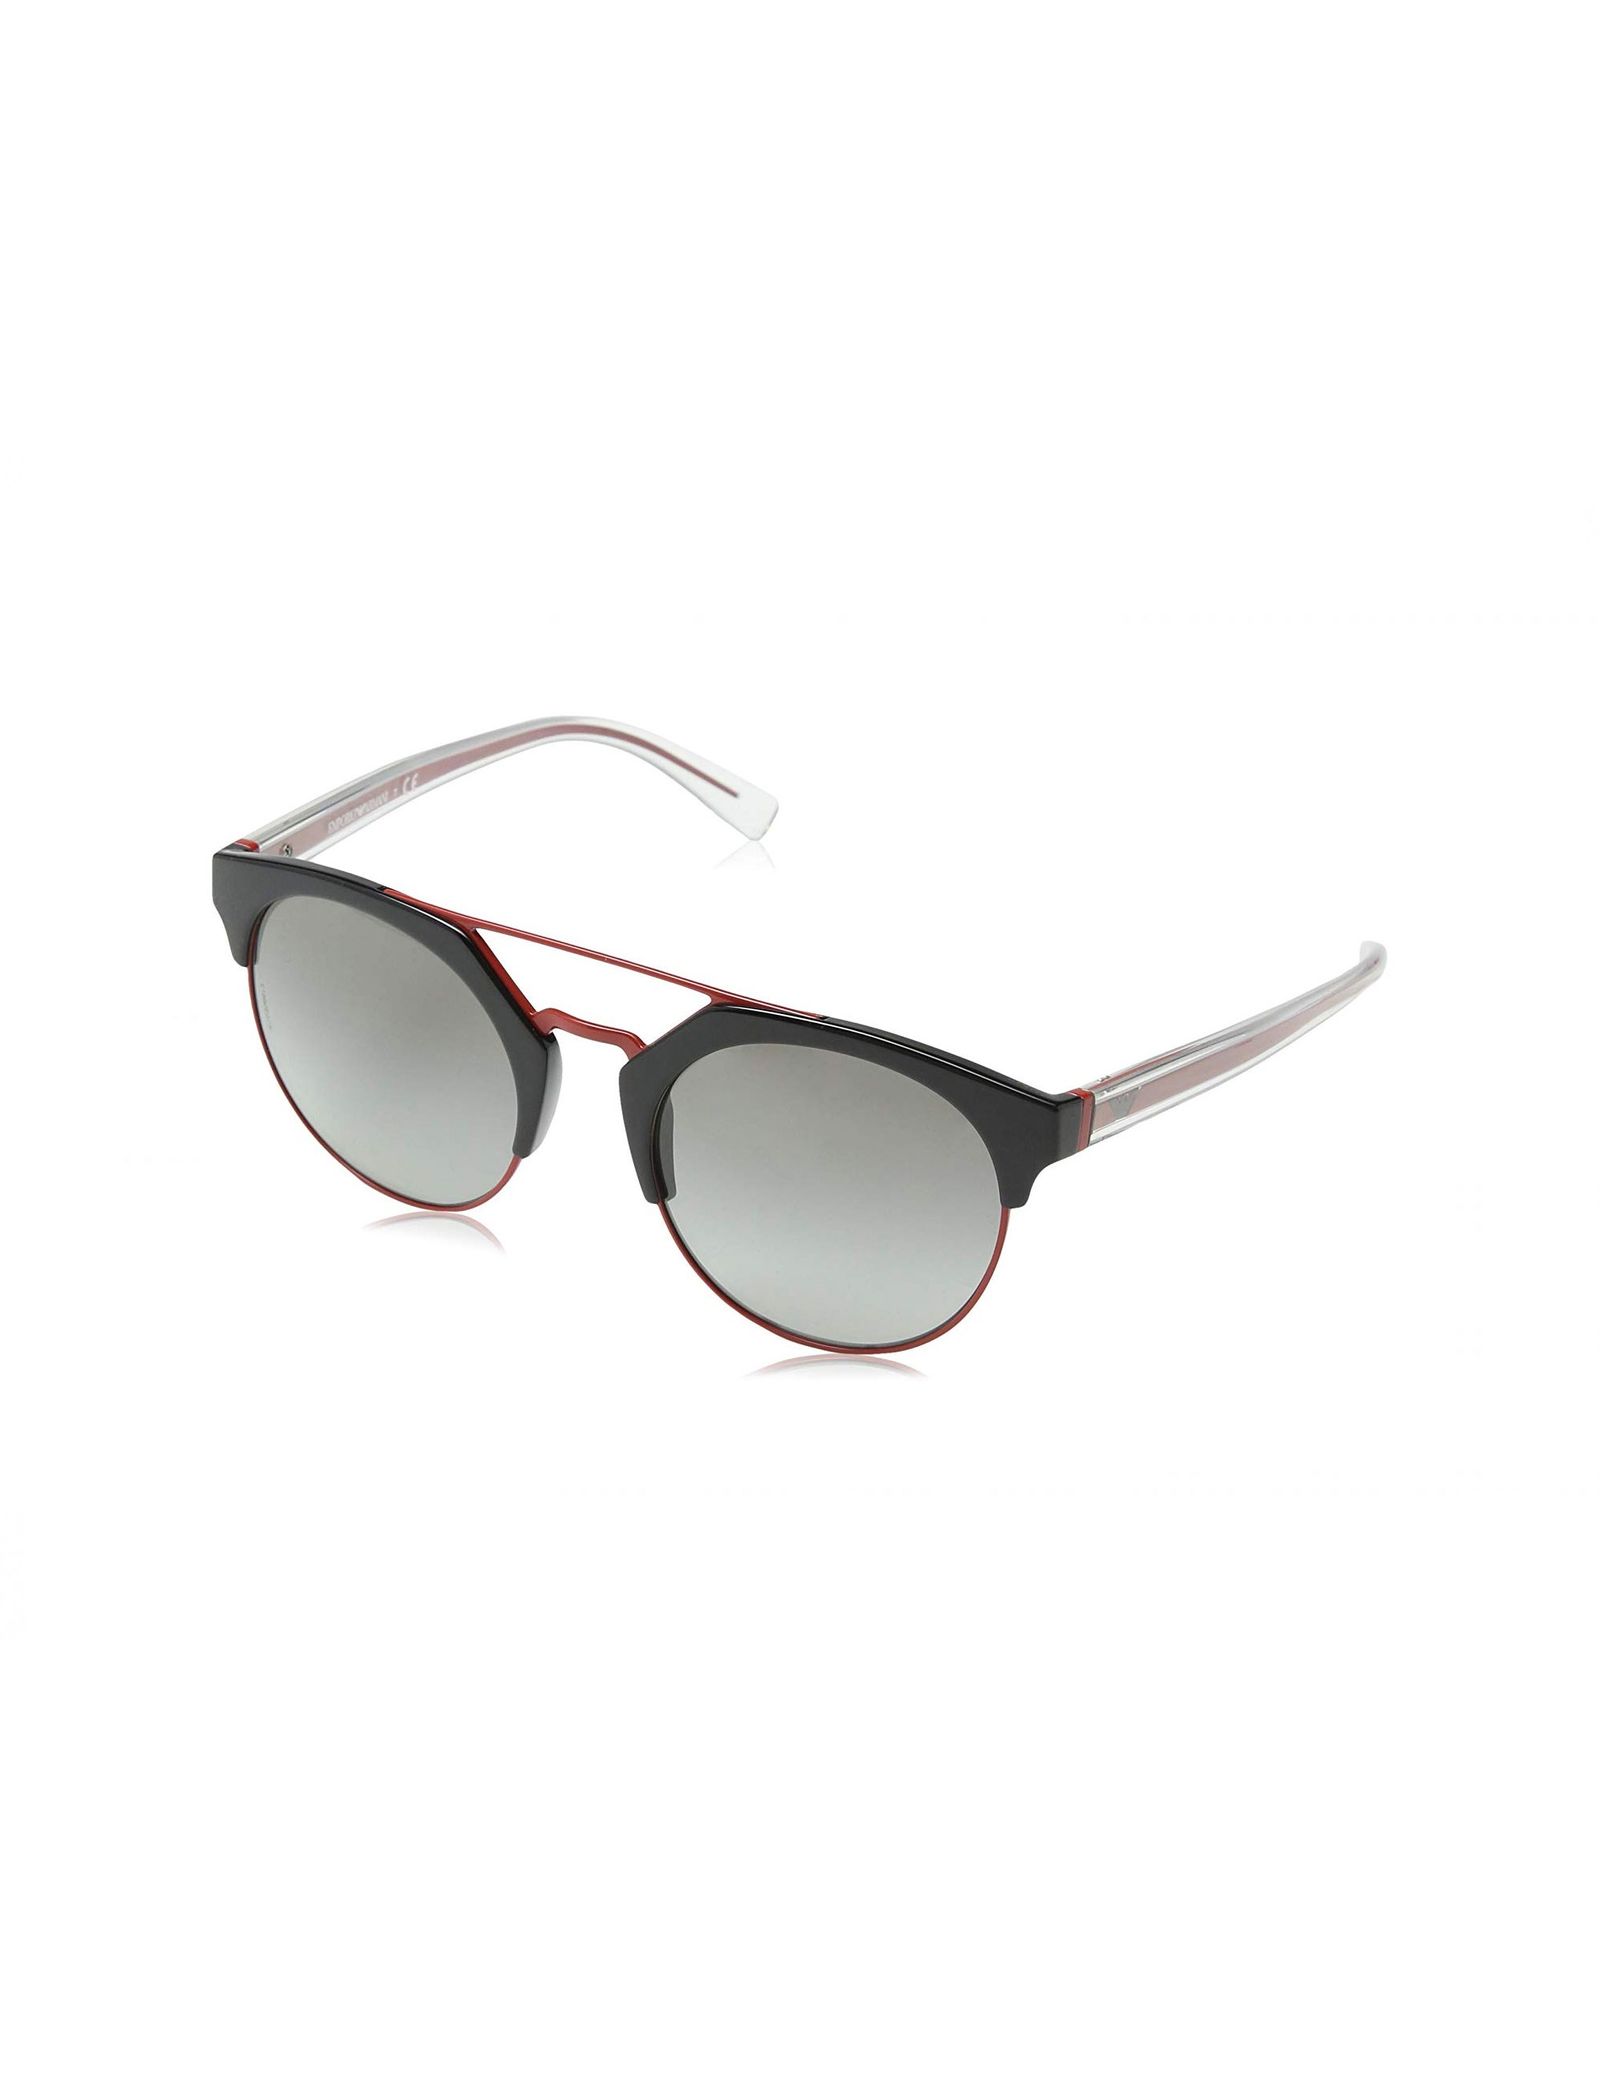 عینک آفتابی گرد زنانه - امپریو آرمانی - مشکي و قرمز - 5